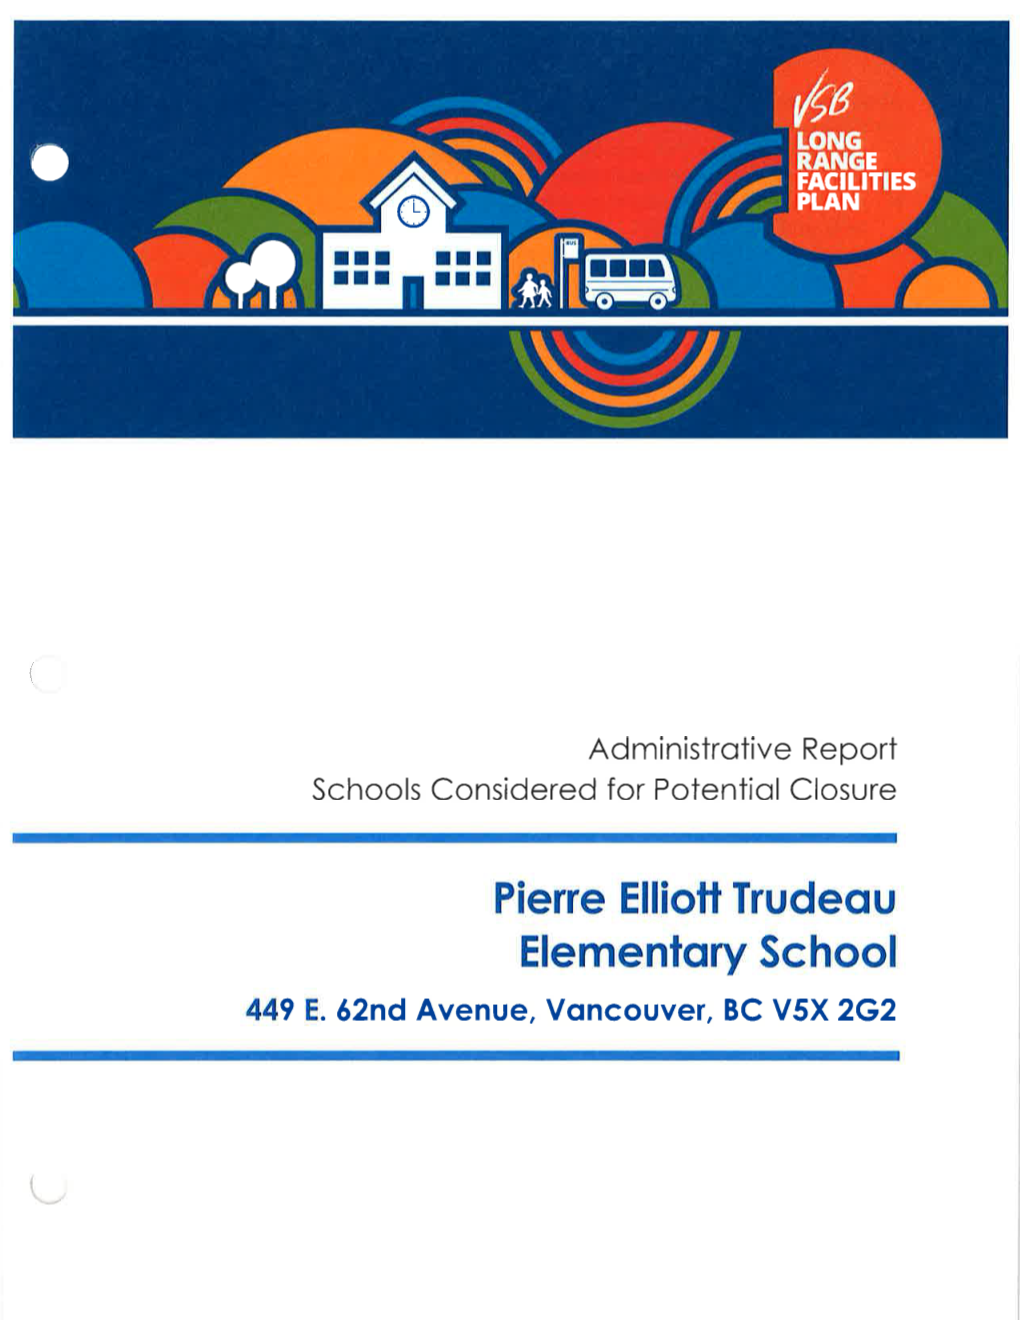 Pierre Elliott Trudeau Elementary School 449 E